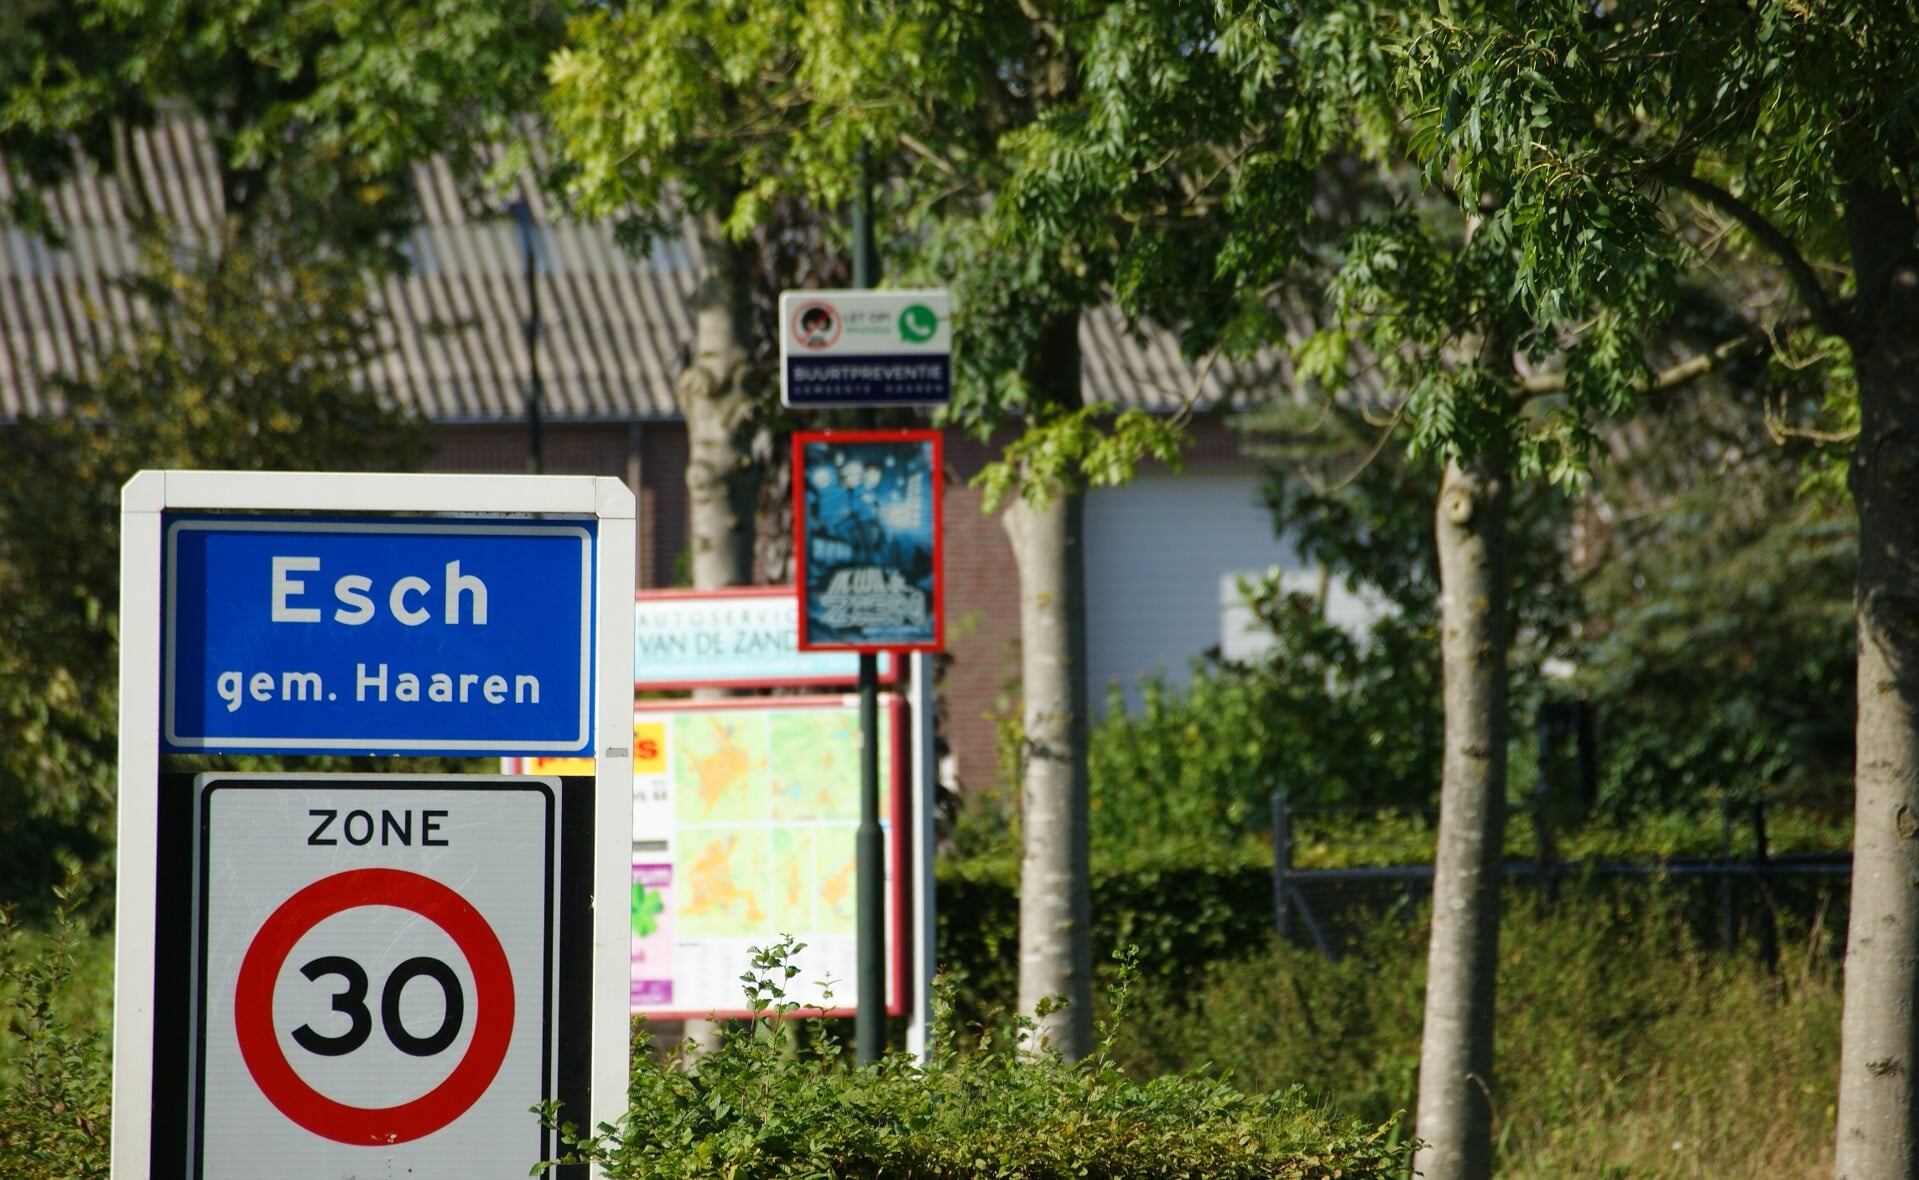 Esch is een stap dichter bij de gemeente Boxtel gekomen. (Foto: Marc Cleutjens).